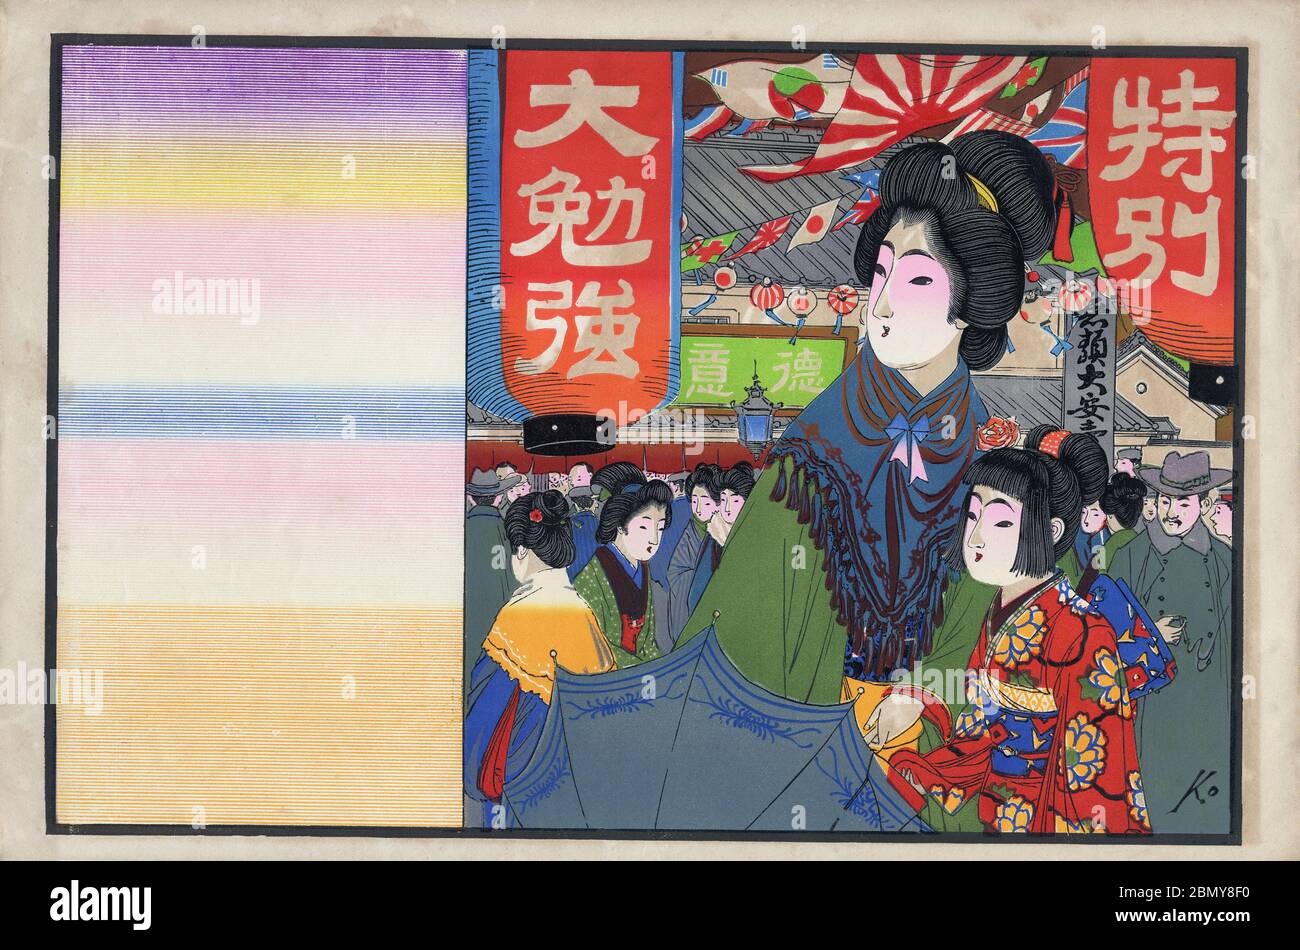 [ Japan 1900 - Illustration des japanischen Mutter & Tochter-Einkaufs ] - Hikifuda (引札), ein Druck, der von lokalen Geschäften als Werbeflyer verwendet wird. Sie waren von den 1800er bis in die 1920er Jahre populär. Es zeigt eine Mutter und Tochter einkaufen auf einer überfüllten Straße mit Fahnen. Die Mutter hält einen Regenschirm im westlichen Stil. 20. Jahrhundert Vintage Werbung Flyer. Stockfoto